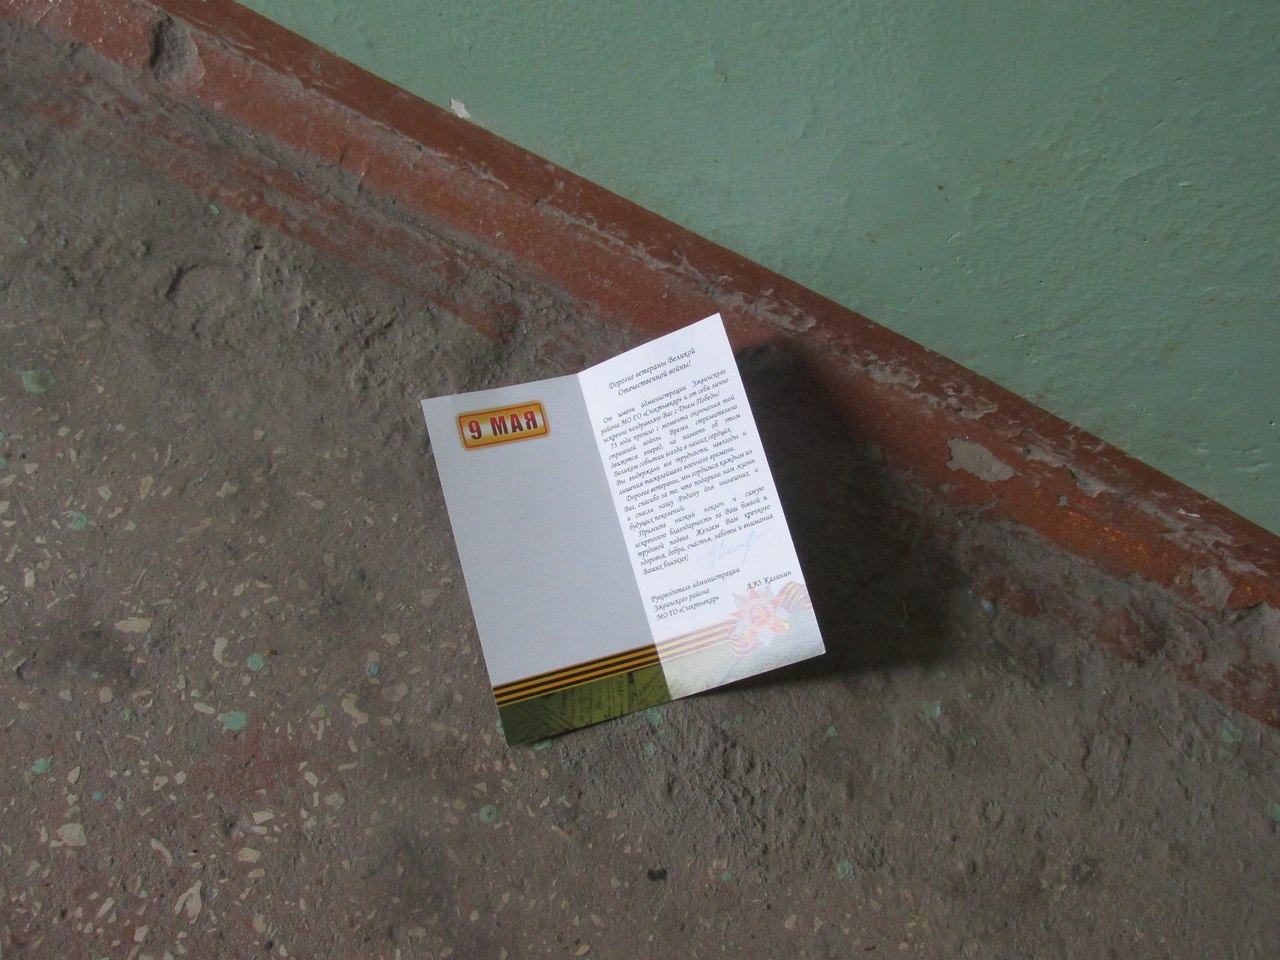 Сыктывкарка: «Накануне 9 Мая открытки для ветеранов разбросали по всему подъезду» (фото)